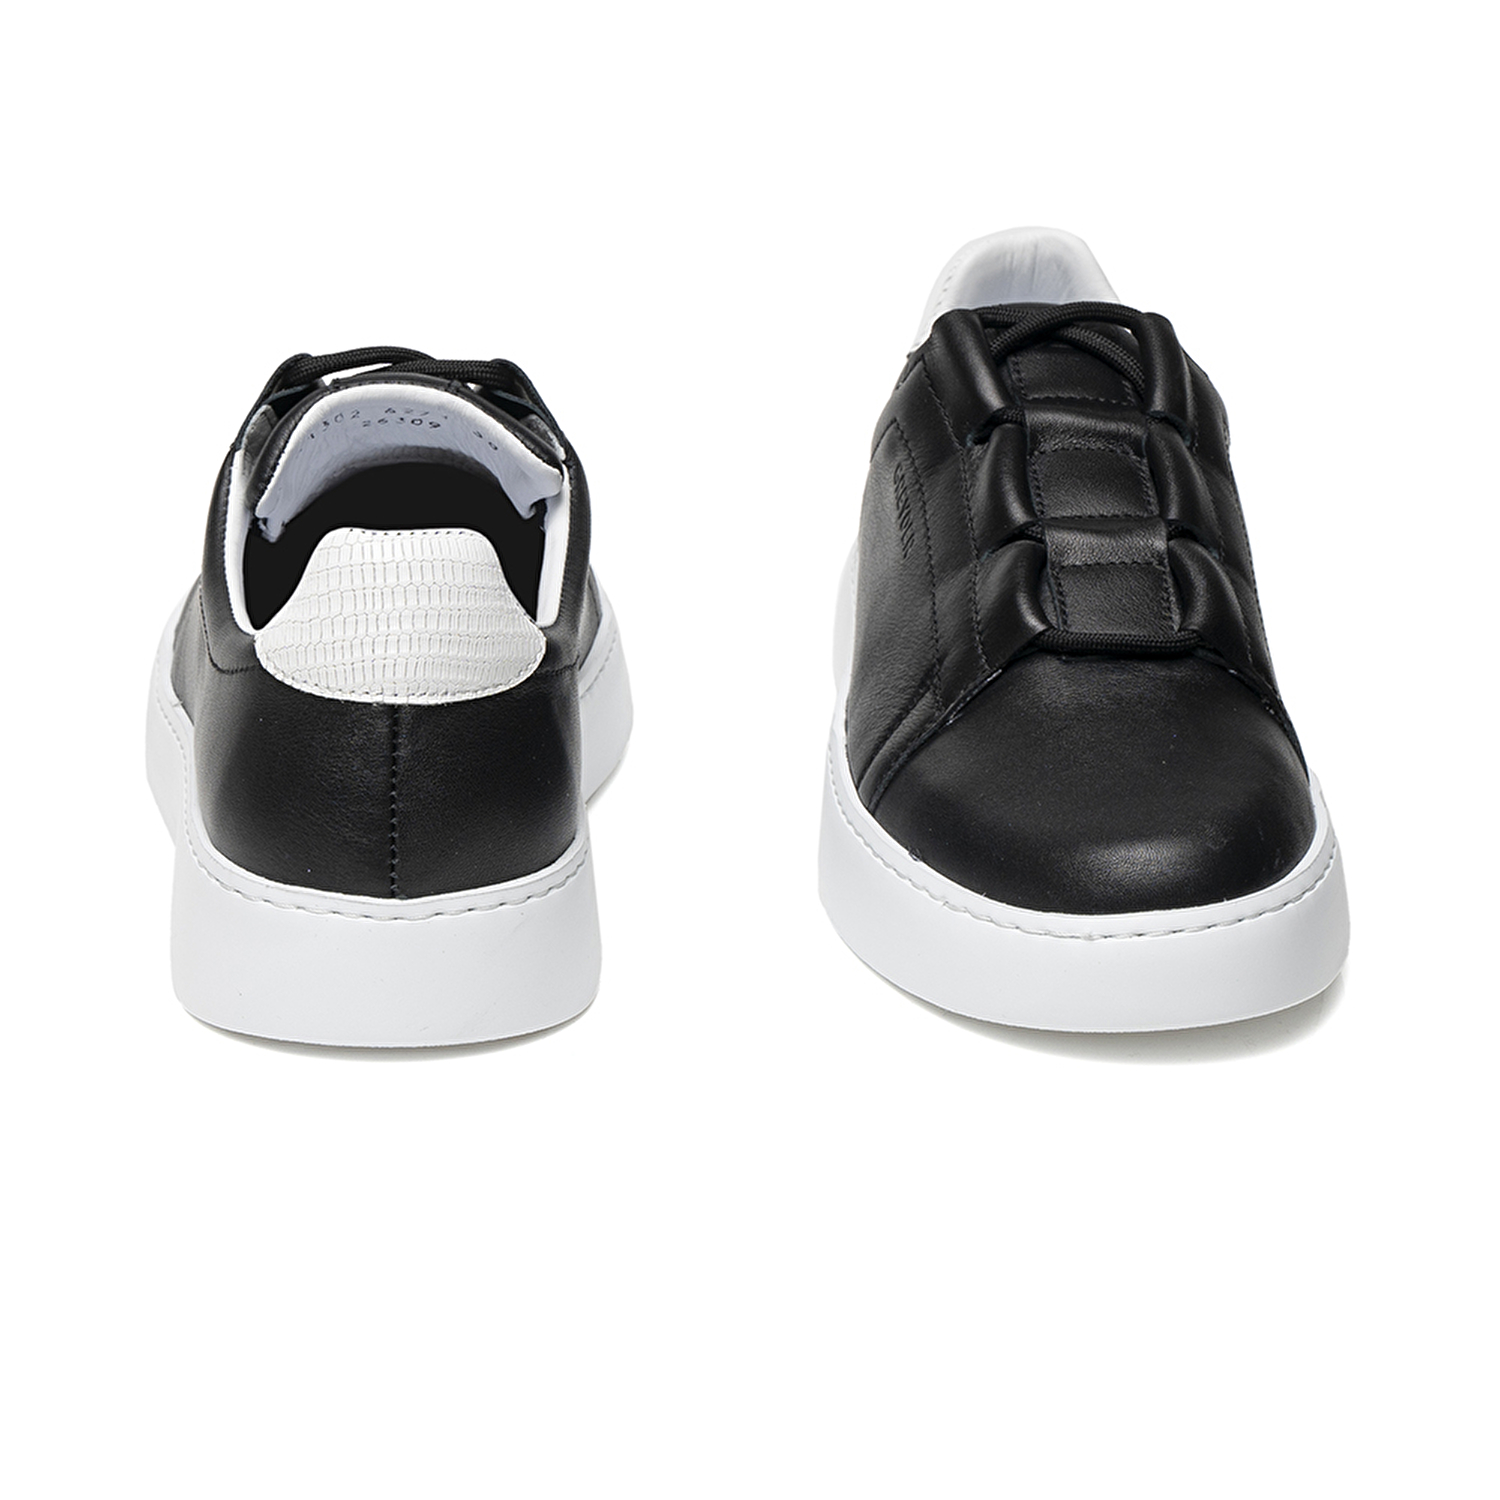 Kadın Siyah Hakiki Deri Sneaker Ayakkabı 2Y2SA31302-4